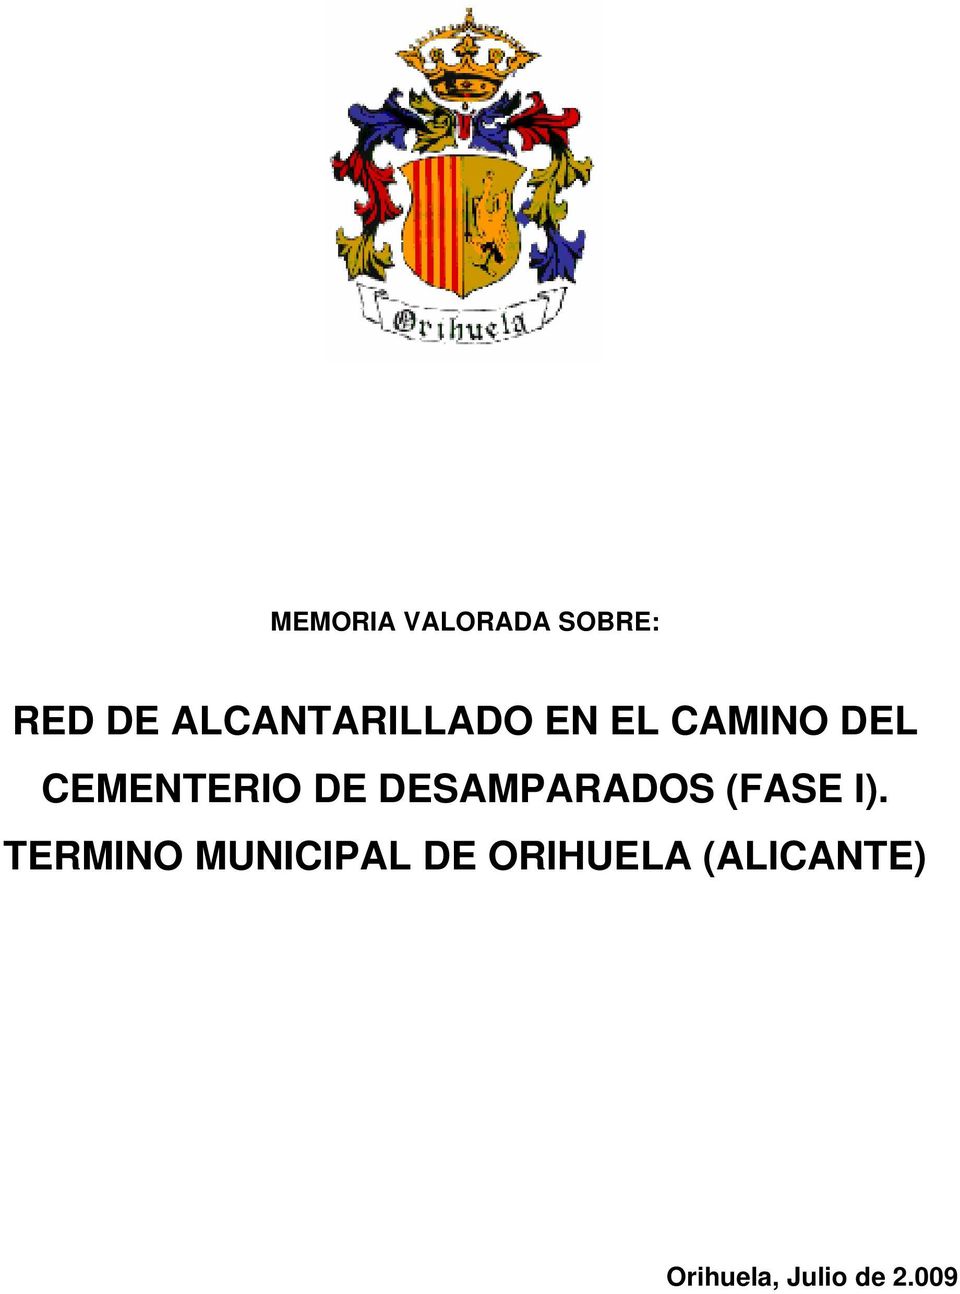 CEMENTERIO DE DESAMPARADOS (FASE I).